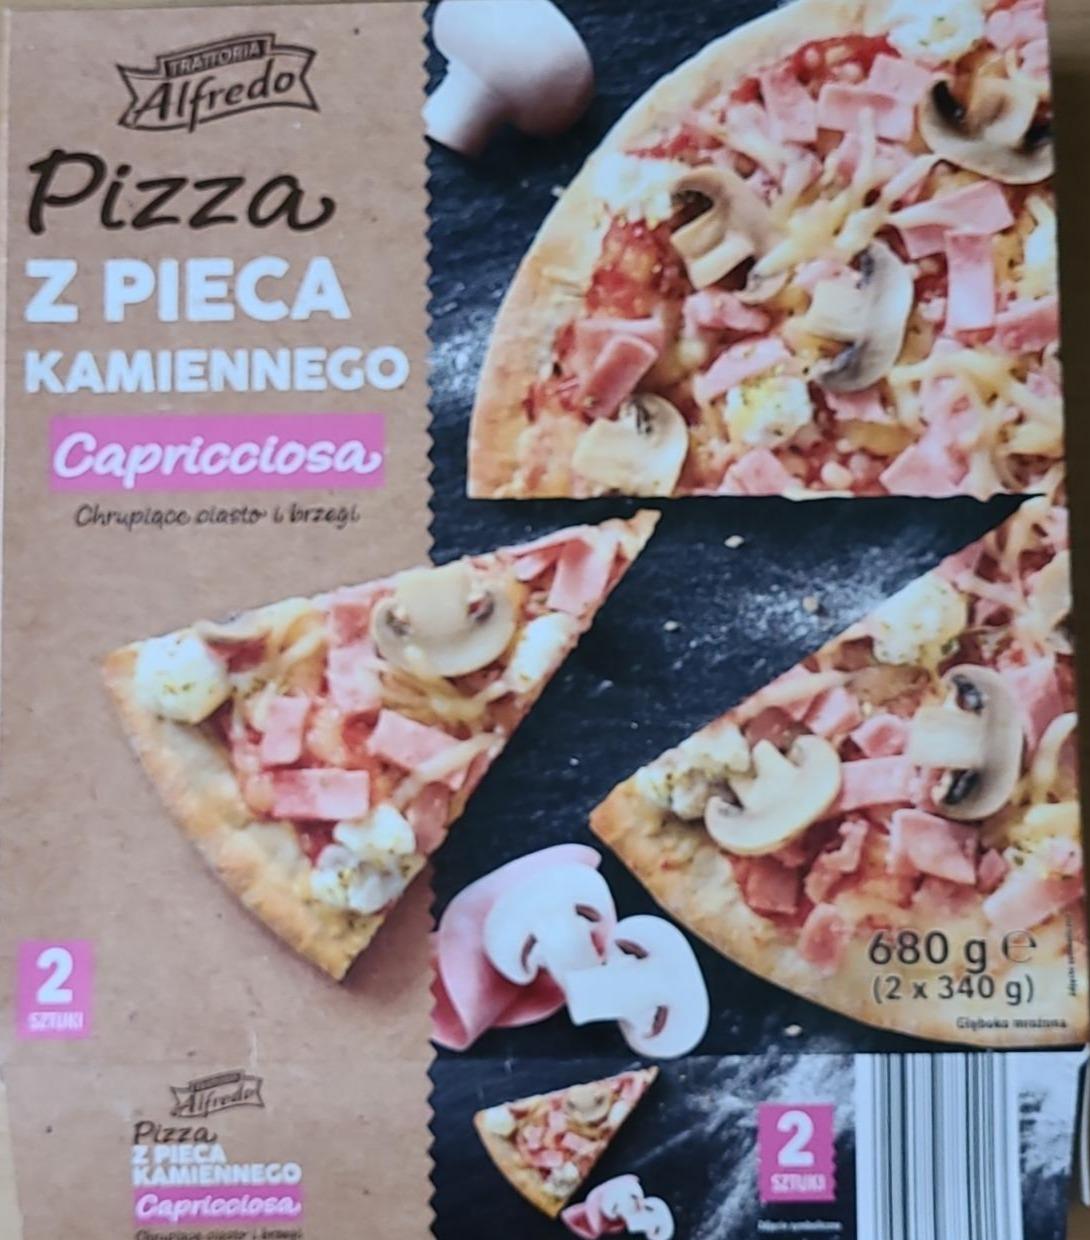 Фото - Pizza z pieca kamiennego capriciossa Trattoria Alfredo